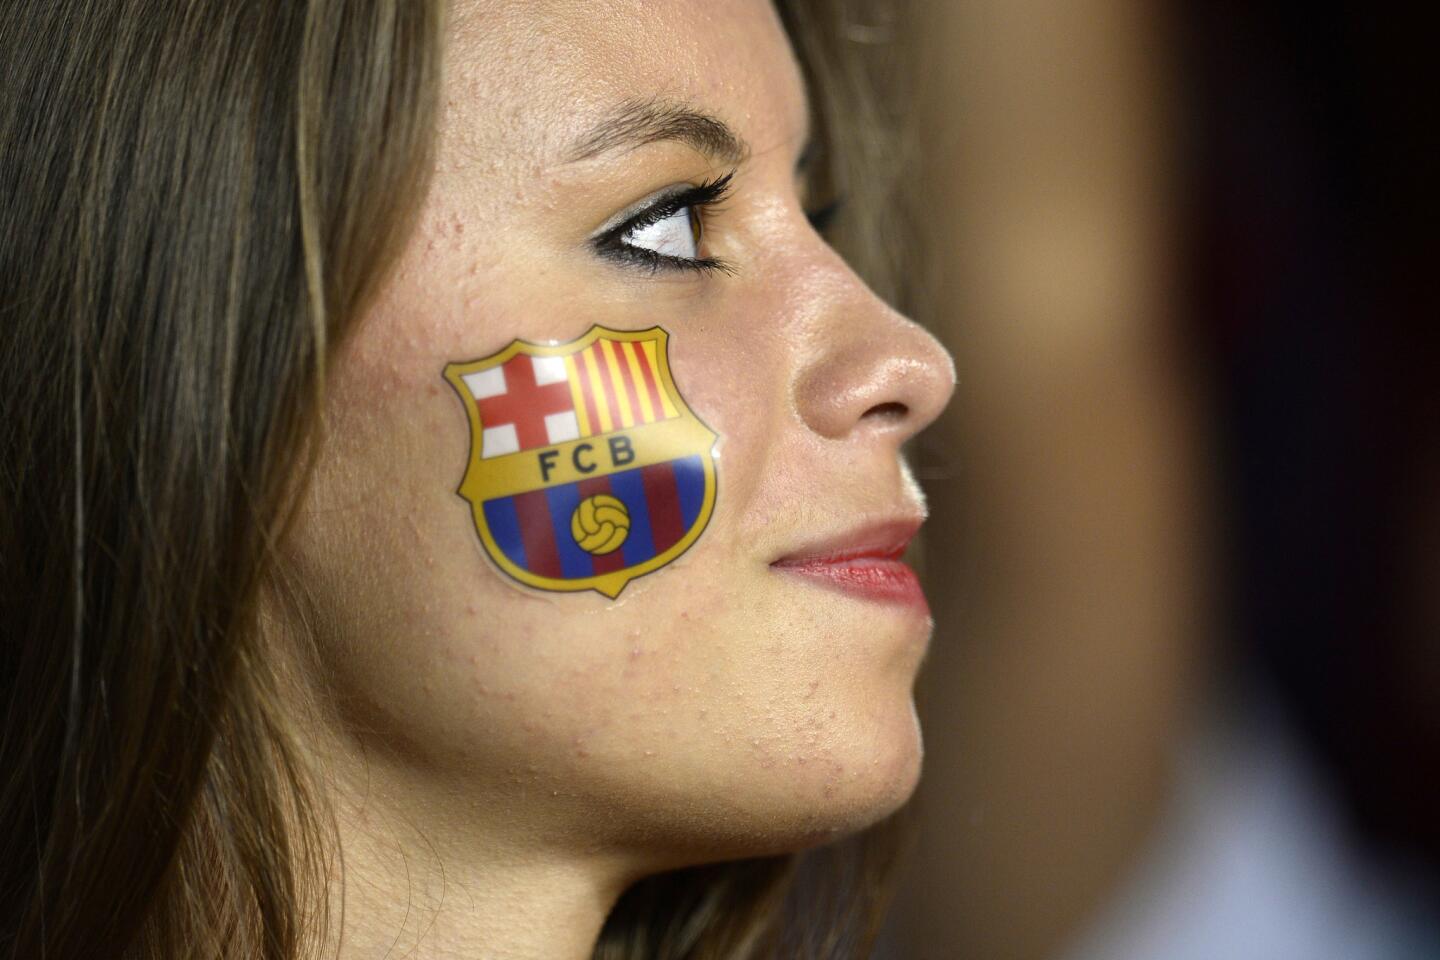 A Barcelona fan